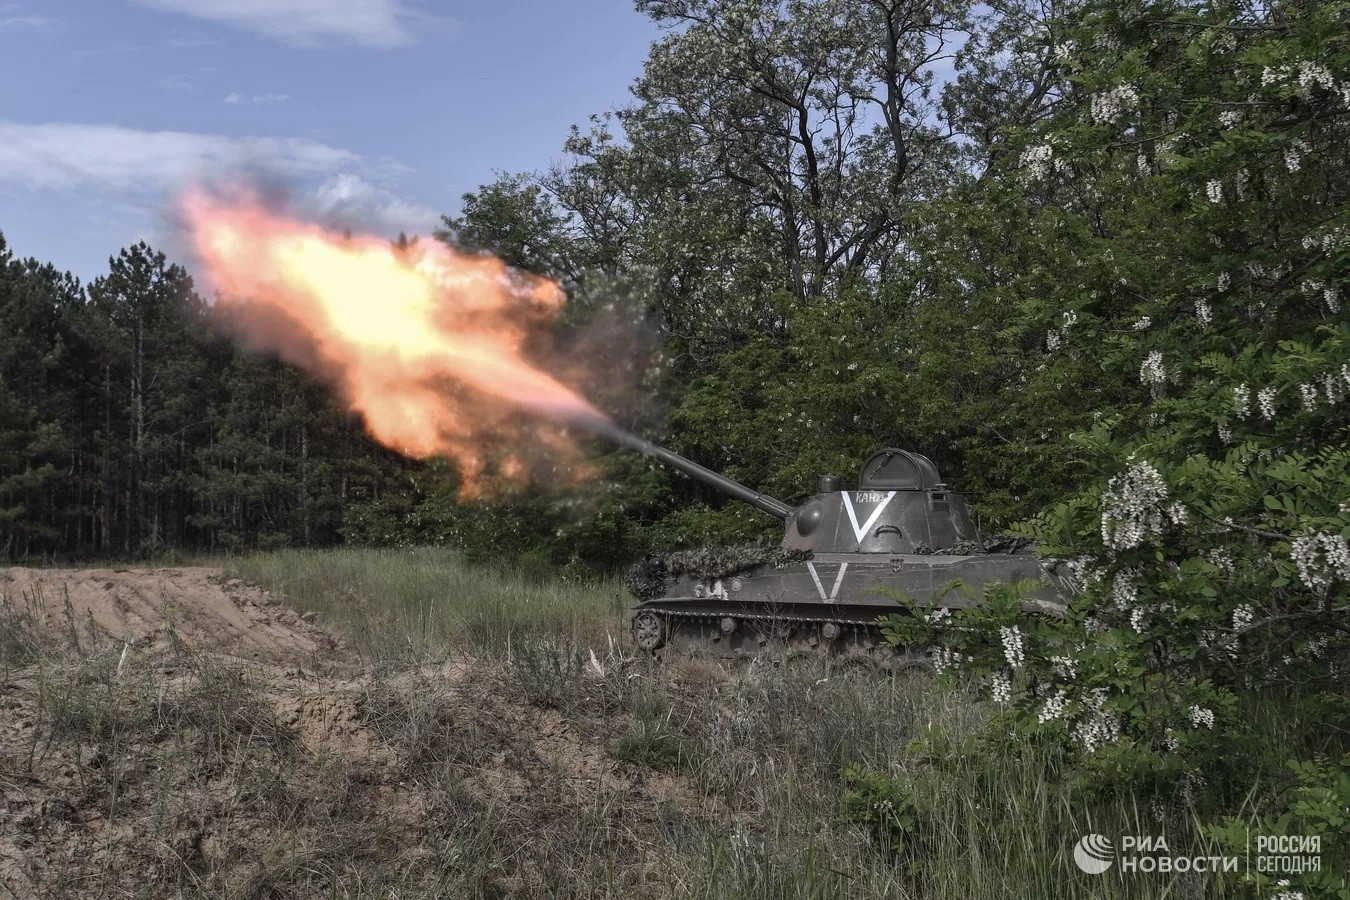 Chuyên gia đánh giá tổn thất trong một tuần của Ukraine, Đức cạn kiệt đạn pháo